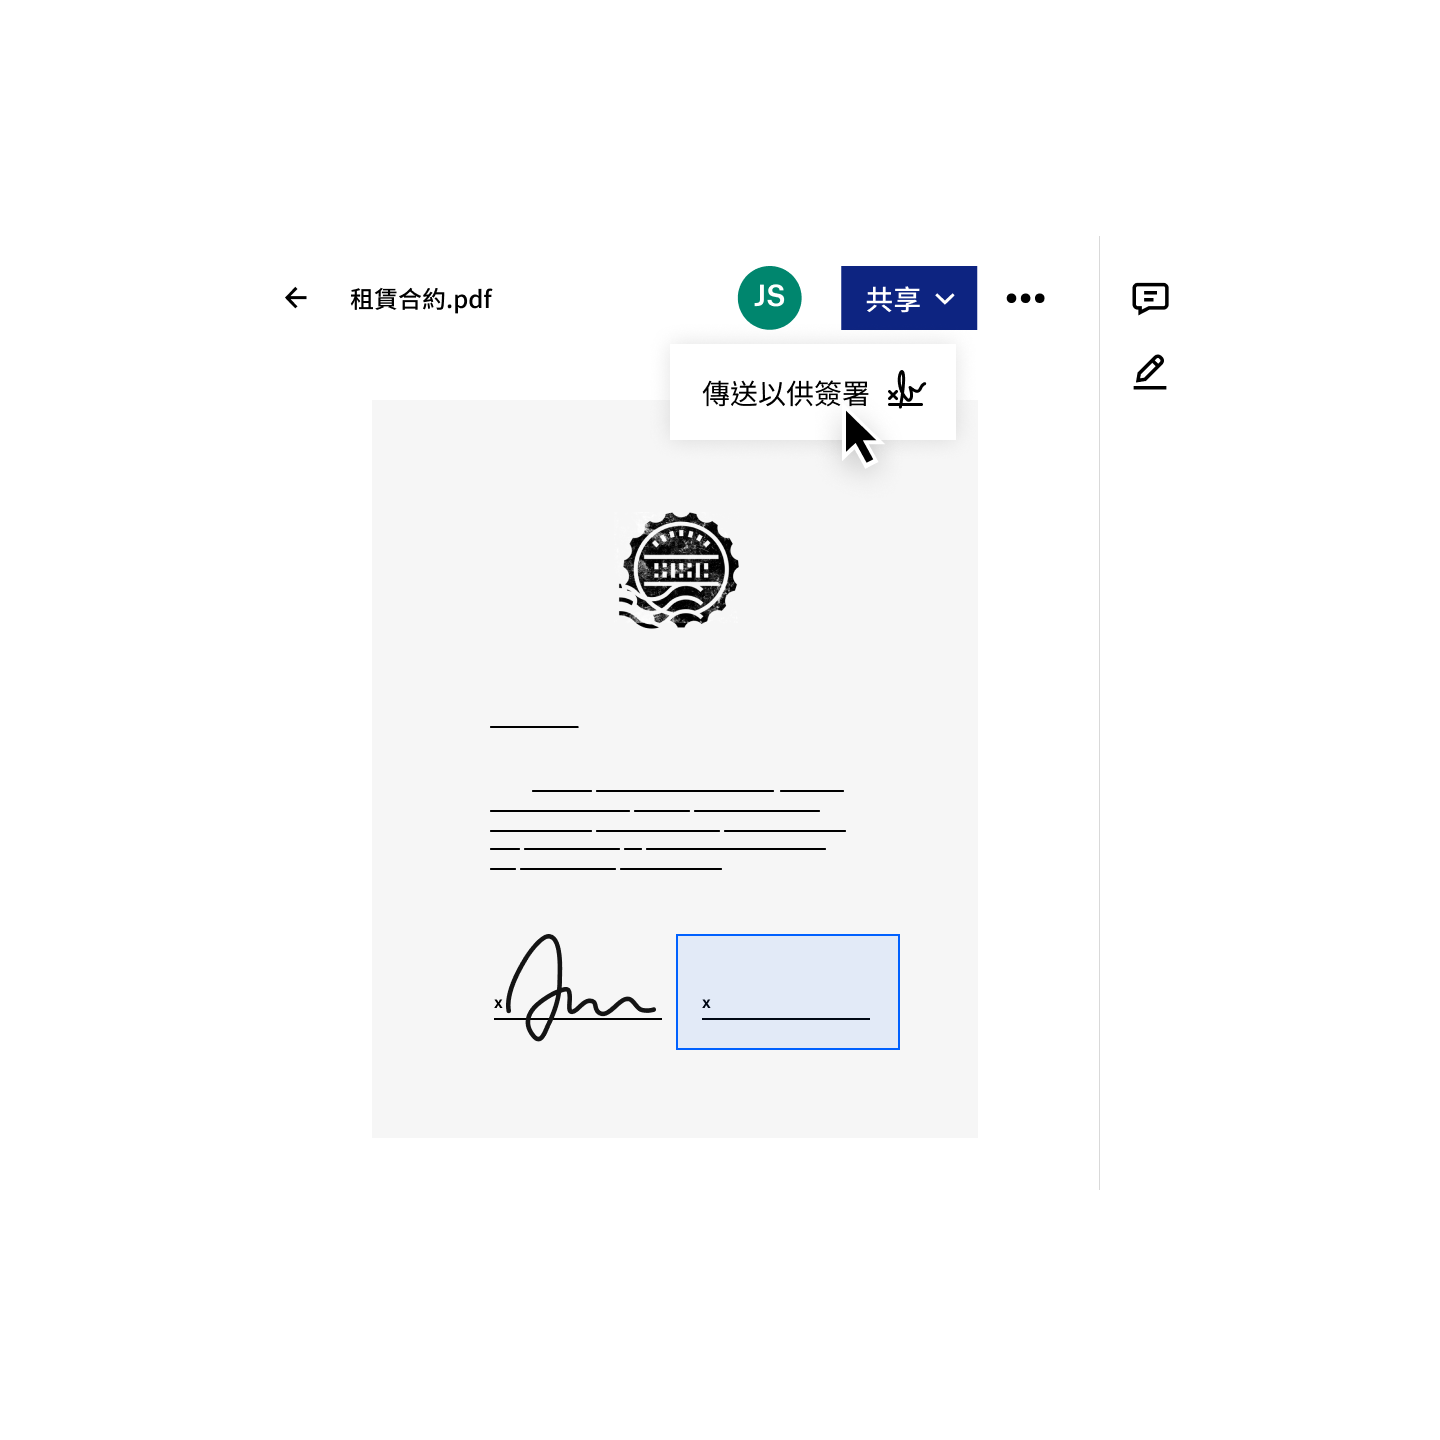 使用者可在 Dropbox 中分享 pdf 以取得電子簽名